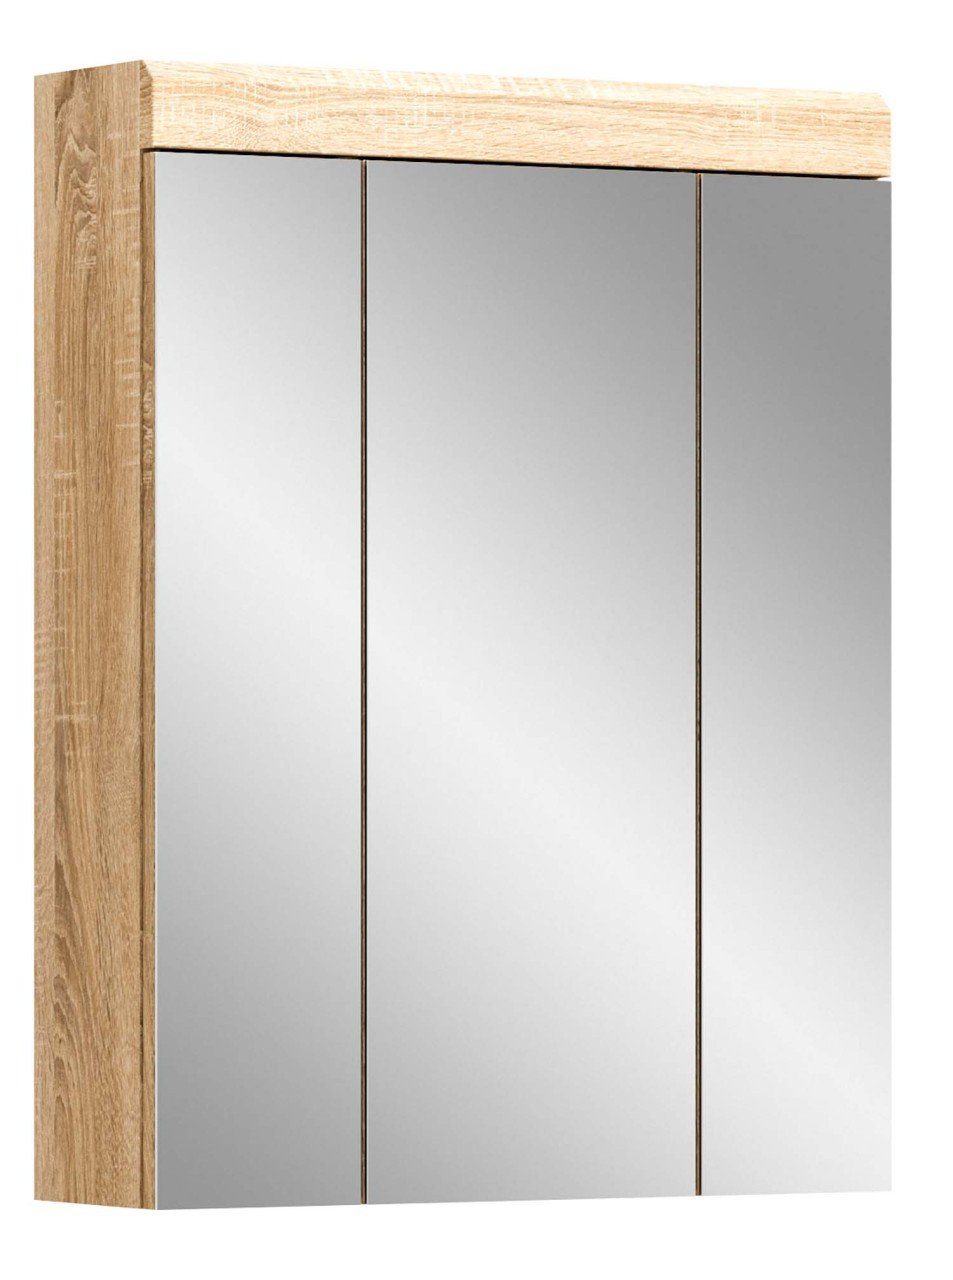 Spiegelschrank Lambada xonox.home Badezimmerspiegelschrank